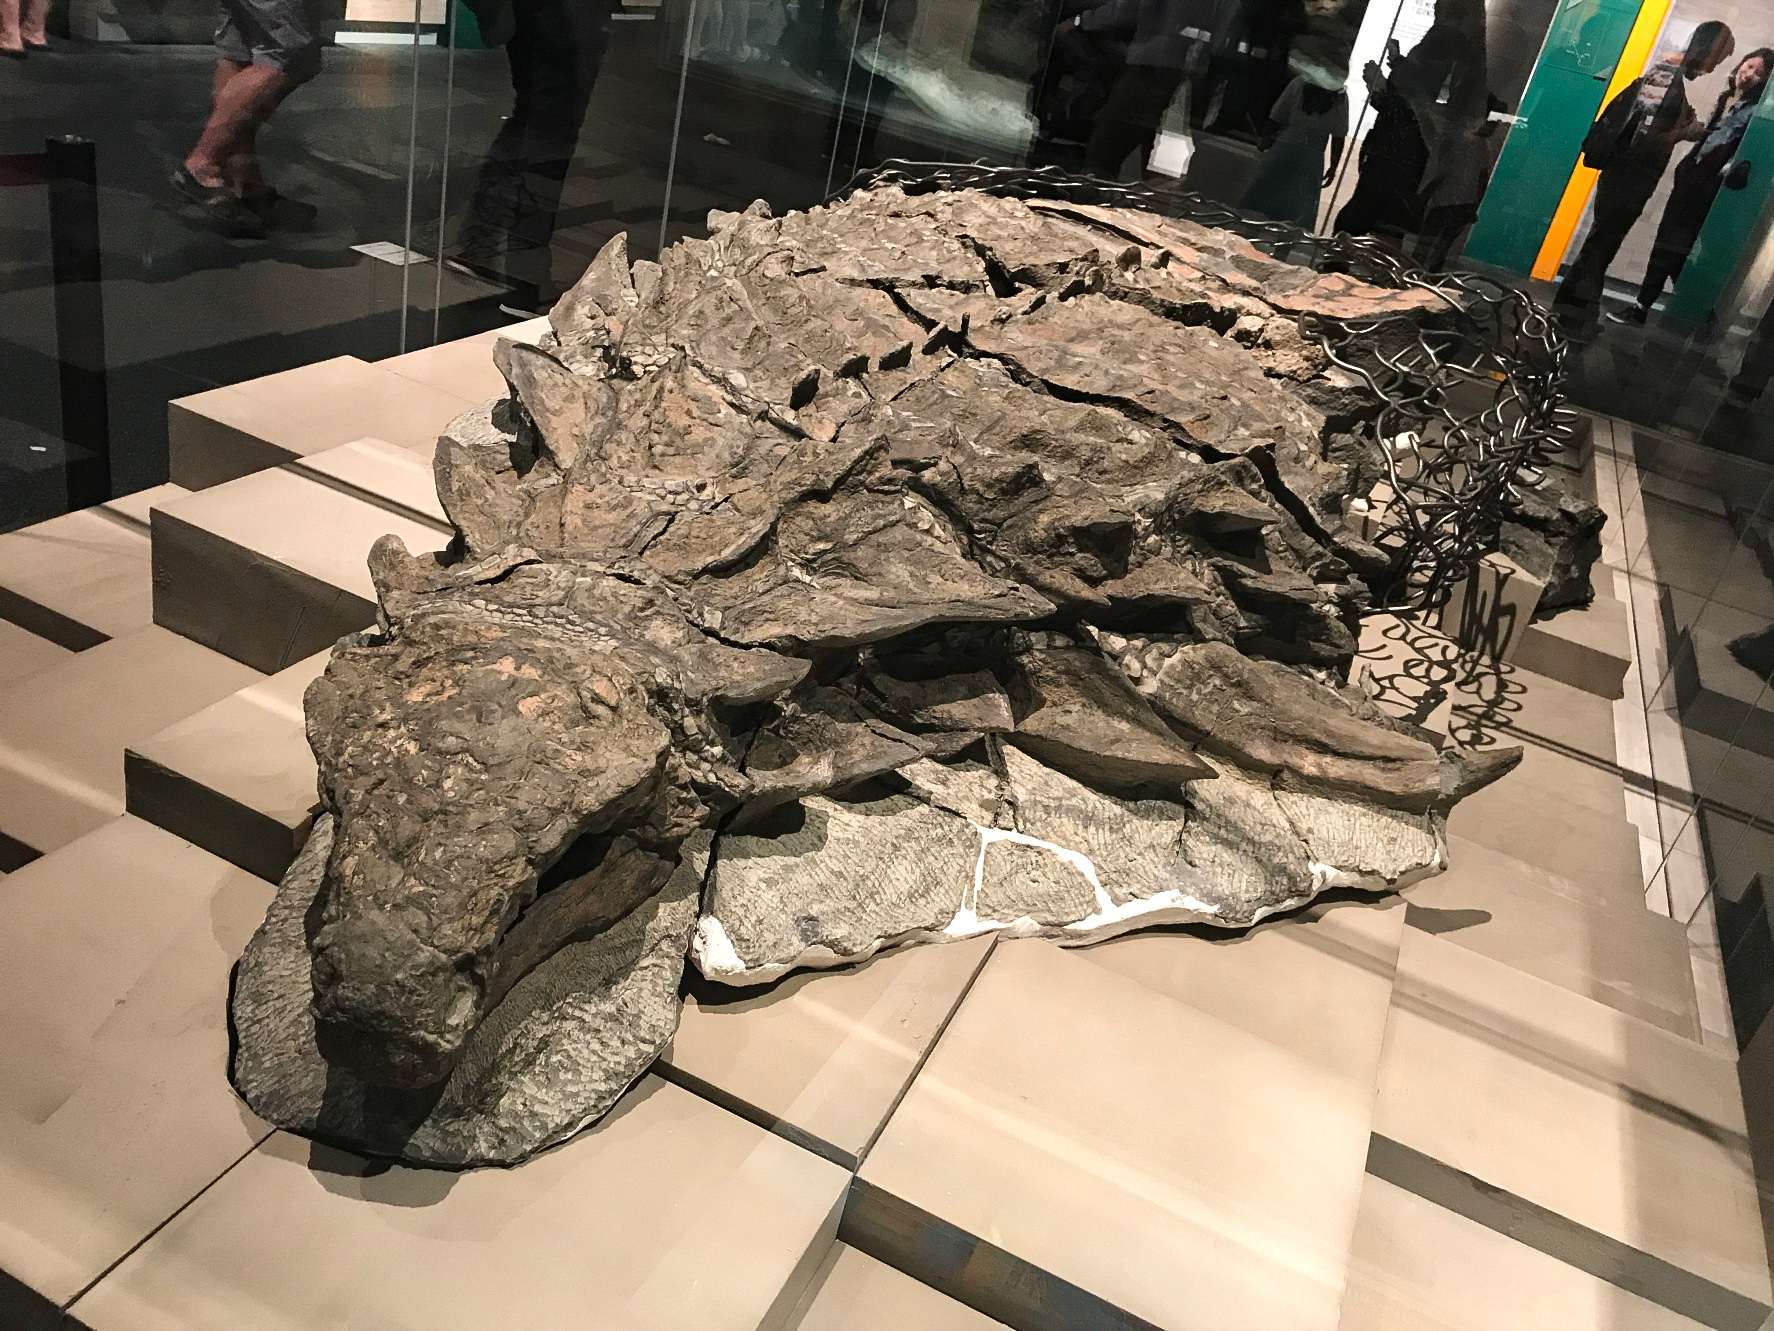 Borealopelta (což znamená „severní štít“) je rod nodosauridského ankylosaura z rané křídy v Albertě v Kanadě. Obsahuje jediný druh, B. markmitchelli, pojmenovaný v roce 2017 Calebem Brownem a kolegy z dobře zachovaného exempláře známého jako Suncor nodosaur.